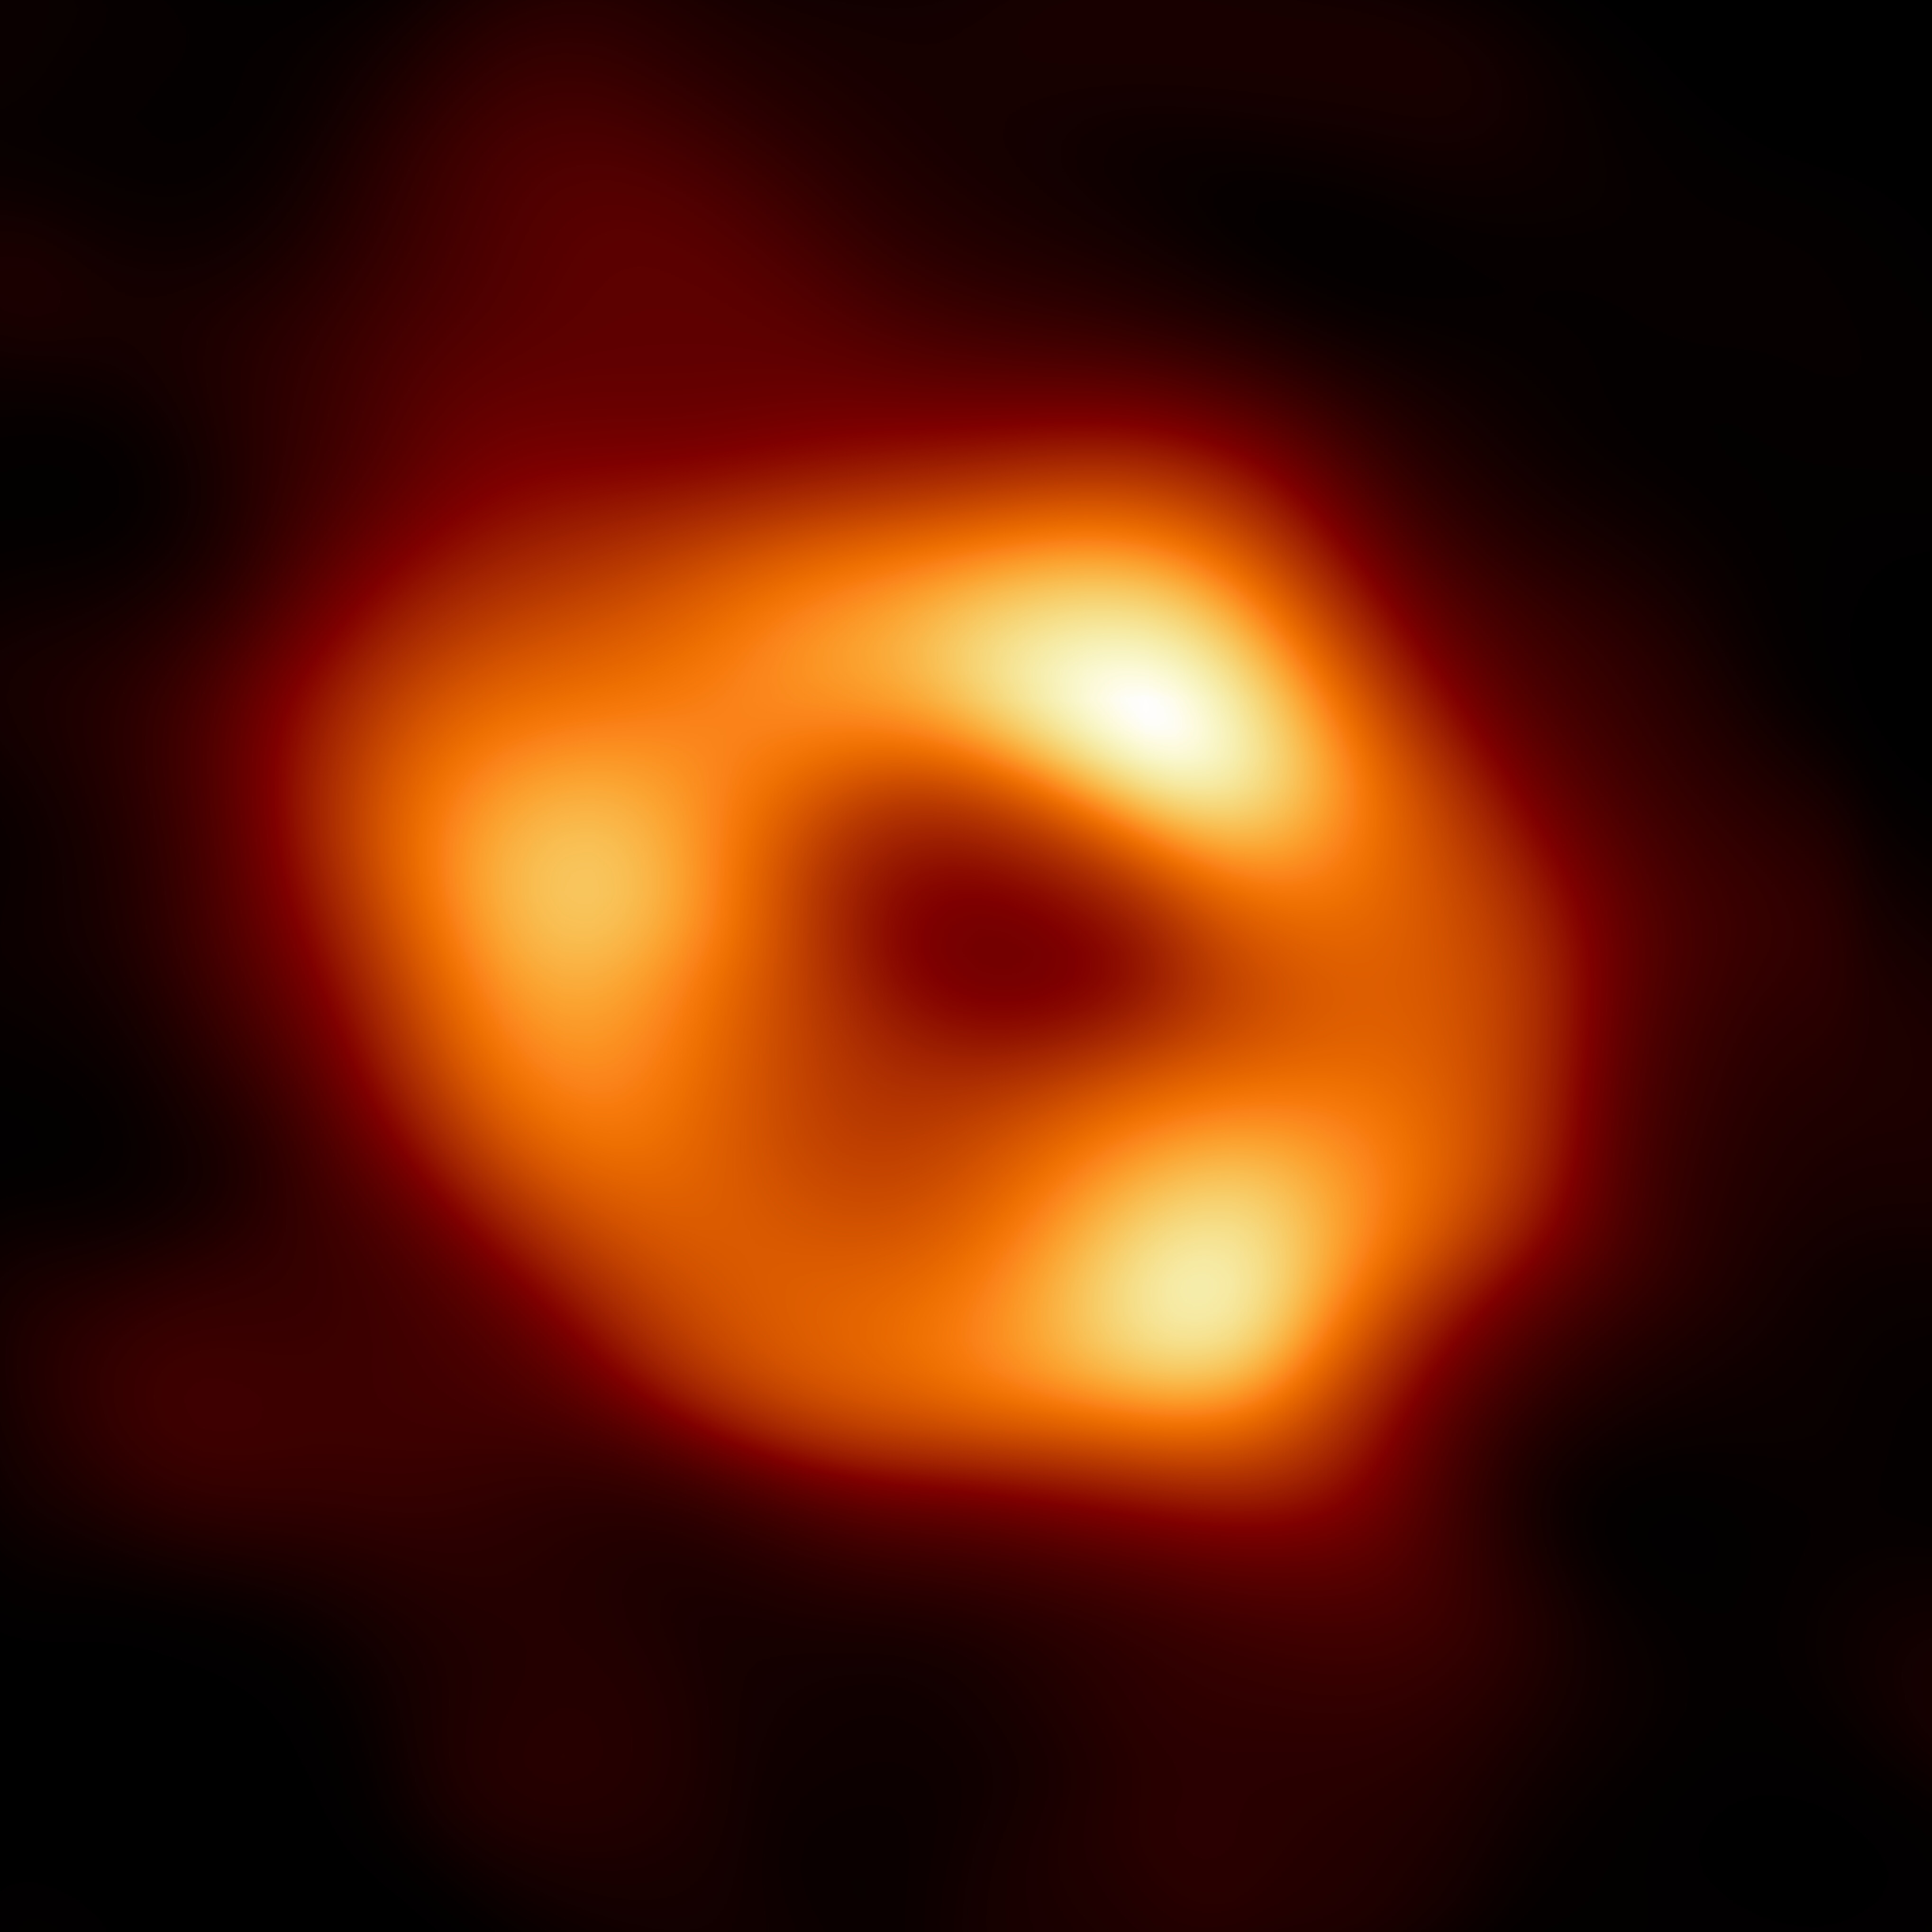 La nouvelle méthode trouvée par les chercheurs s'applique pour les systèmes binaires constitués de deux trous noirs supermassifs. Le trou noir central de la Voie lactée, sur cette image, ne serait pas détectable par cette technique.&nbsp;© Nasa